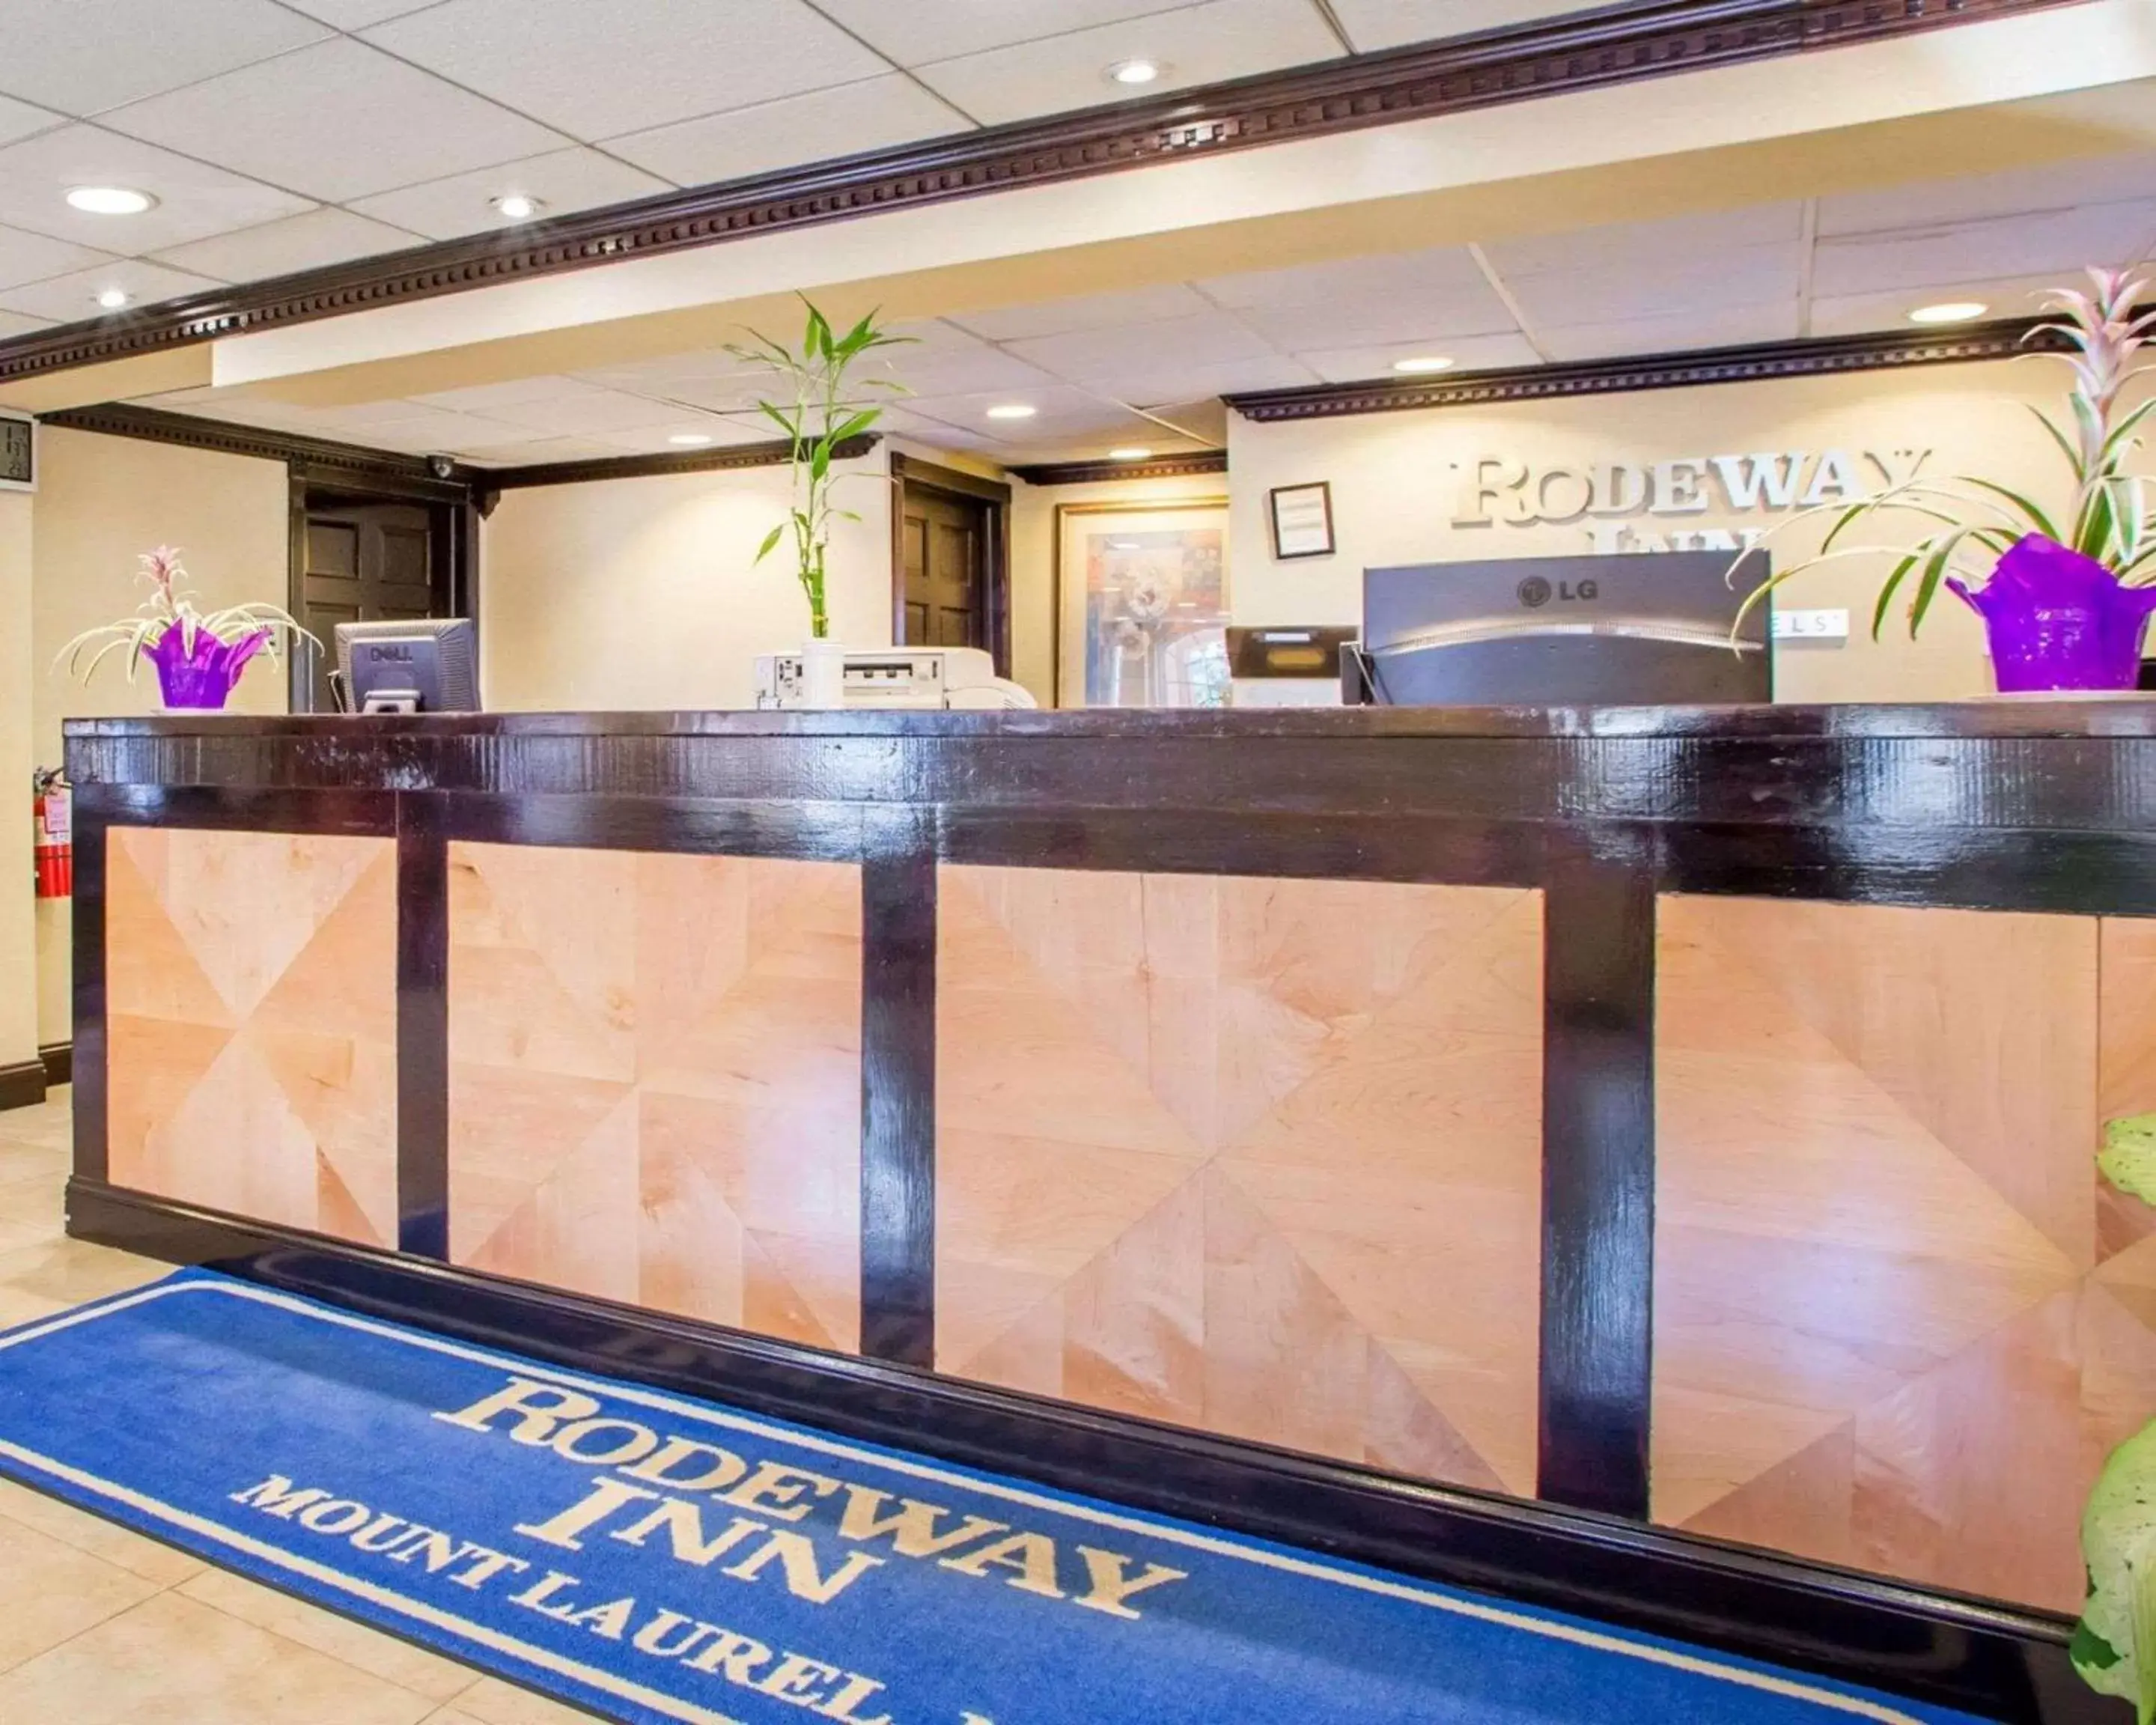 Lobby or reception, Lobby/Reception in Rodeway Inn Mount Laurel Hwy 73